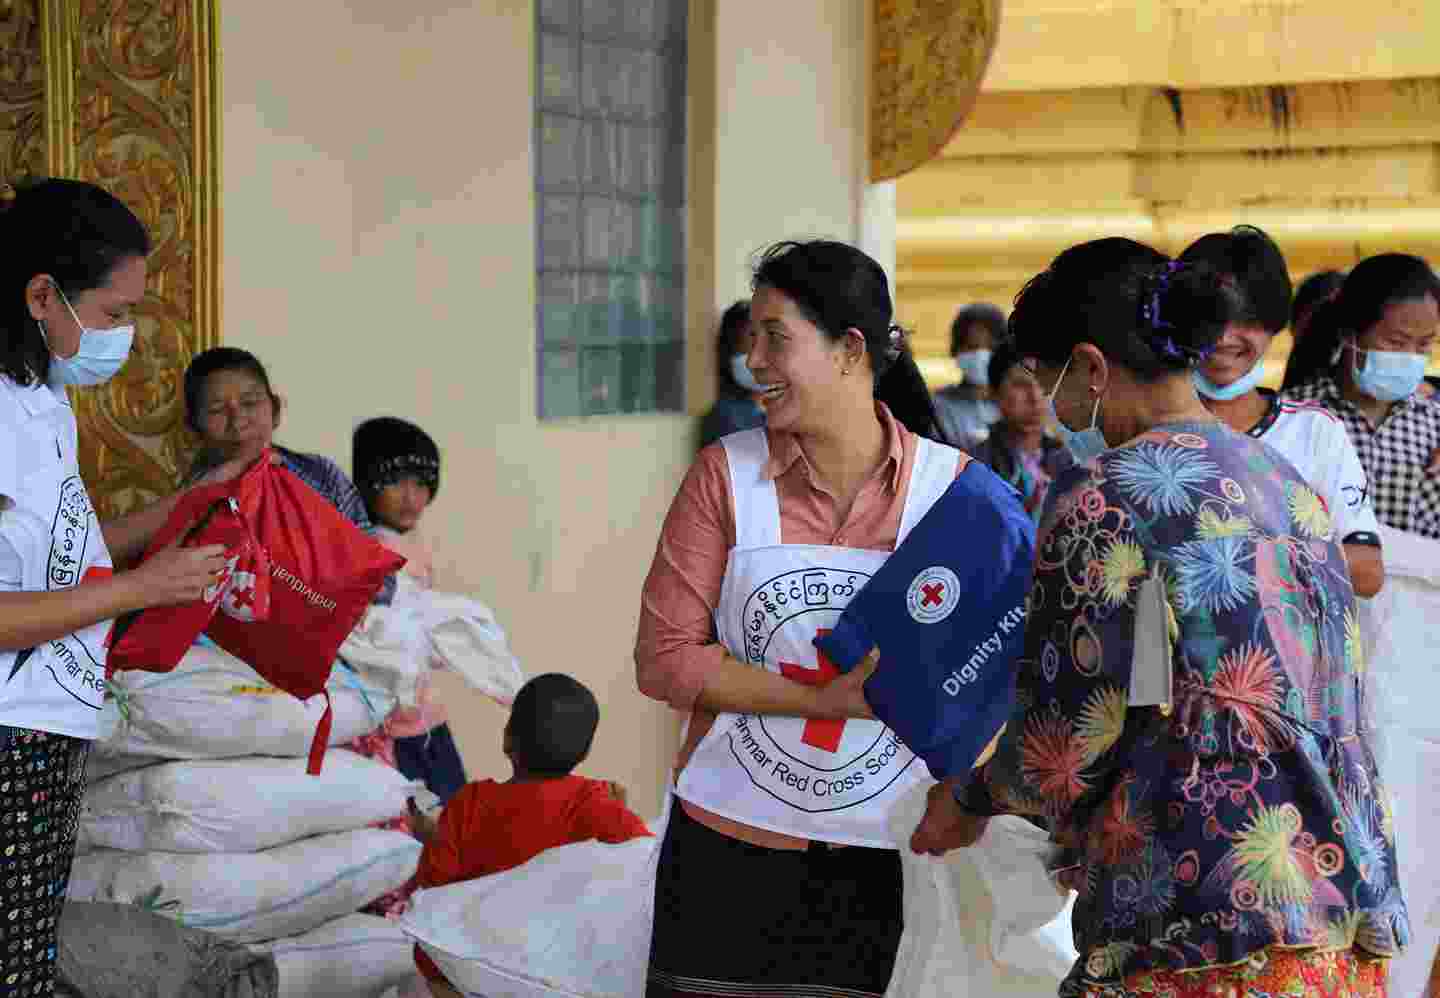 En frivillig inom Röda Korset delar ut hjälppaket.